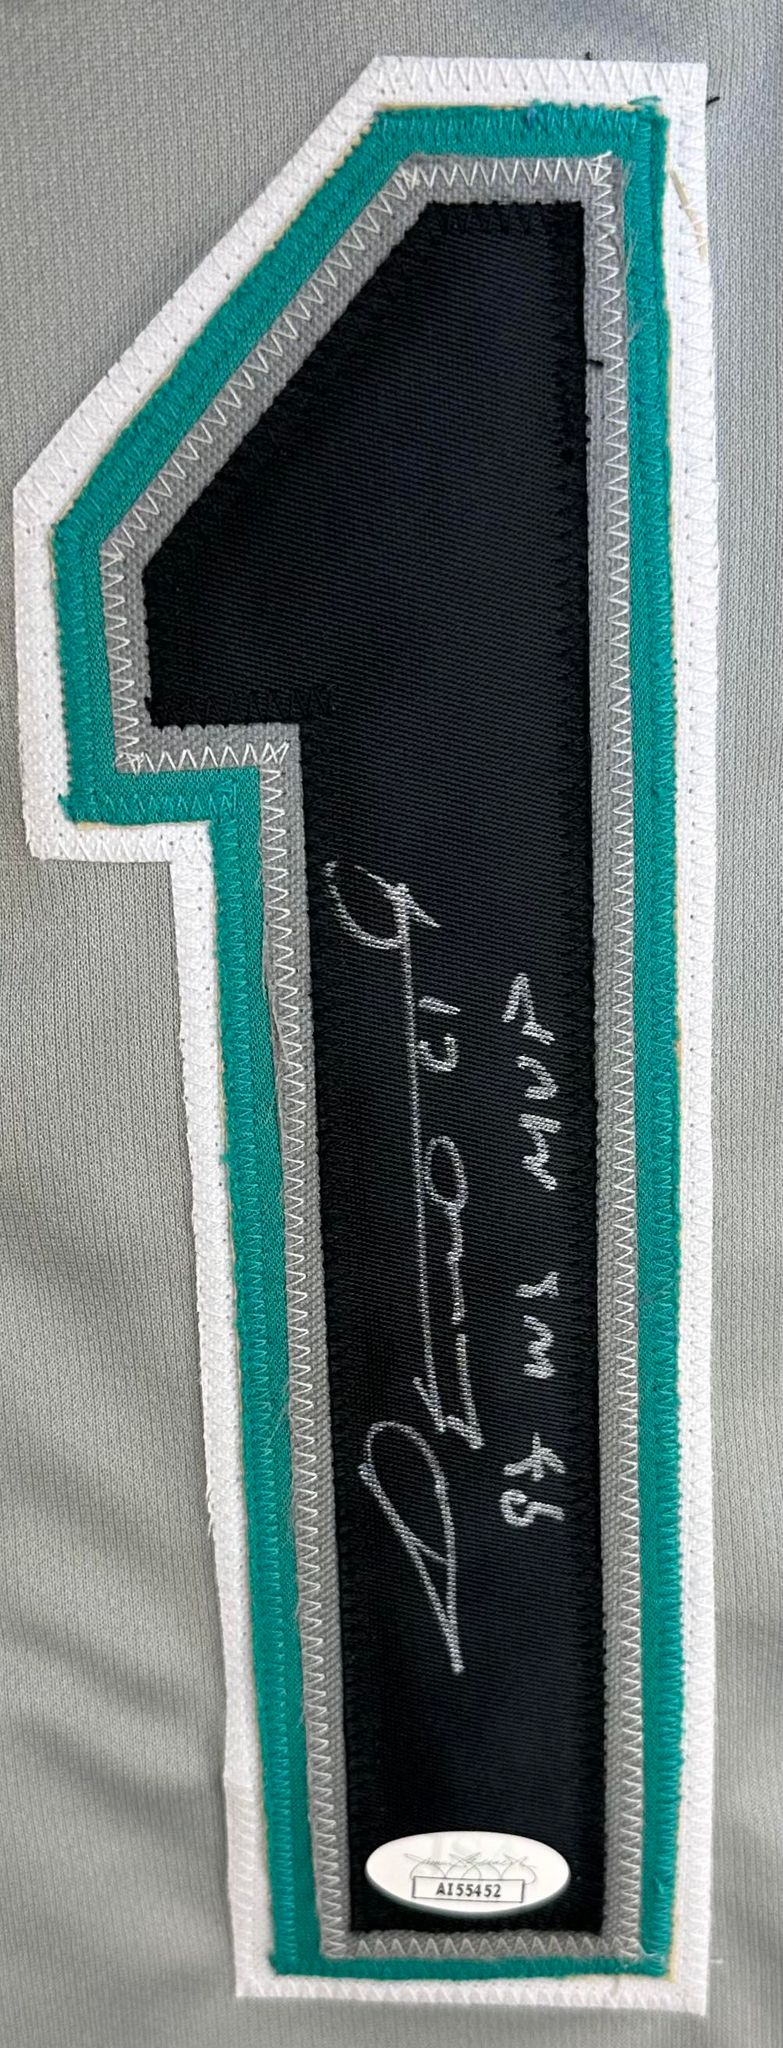 Livan Hernandez autographed signed inscribed jersey MLB Florida Marlins JSA COA